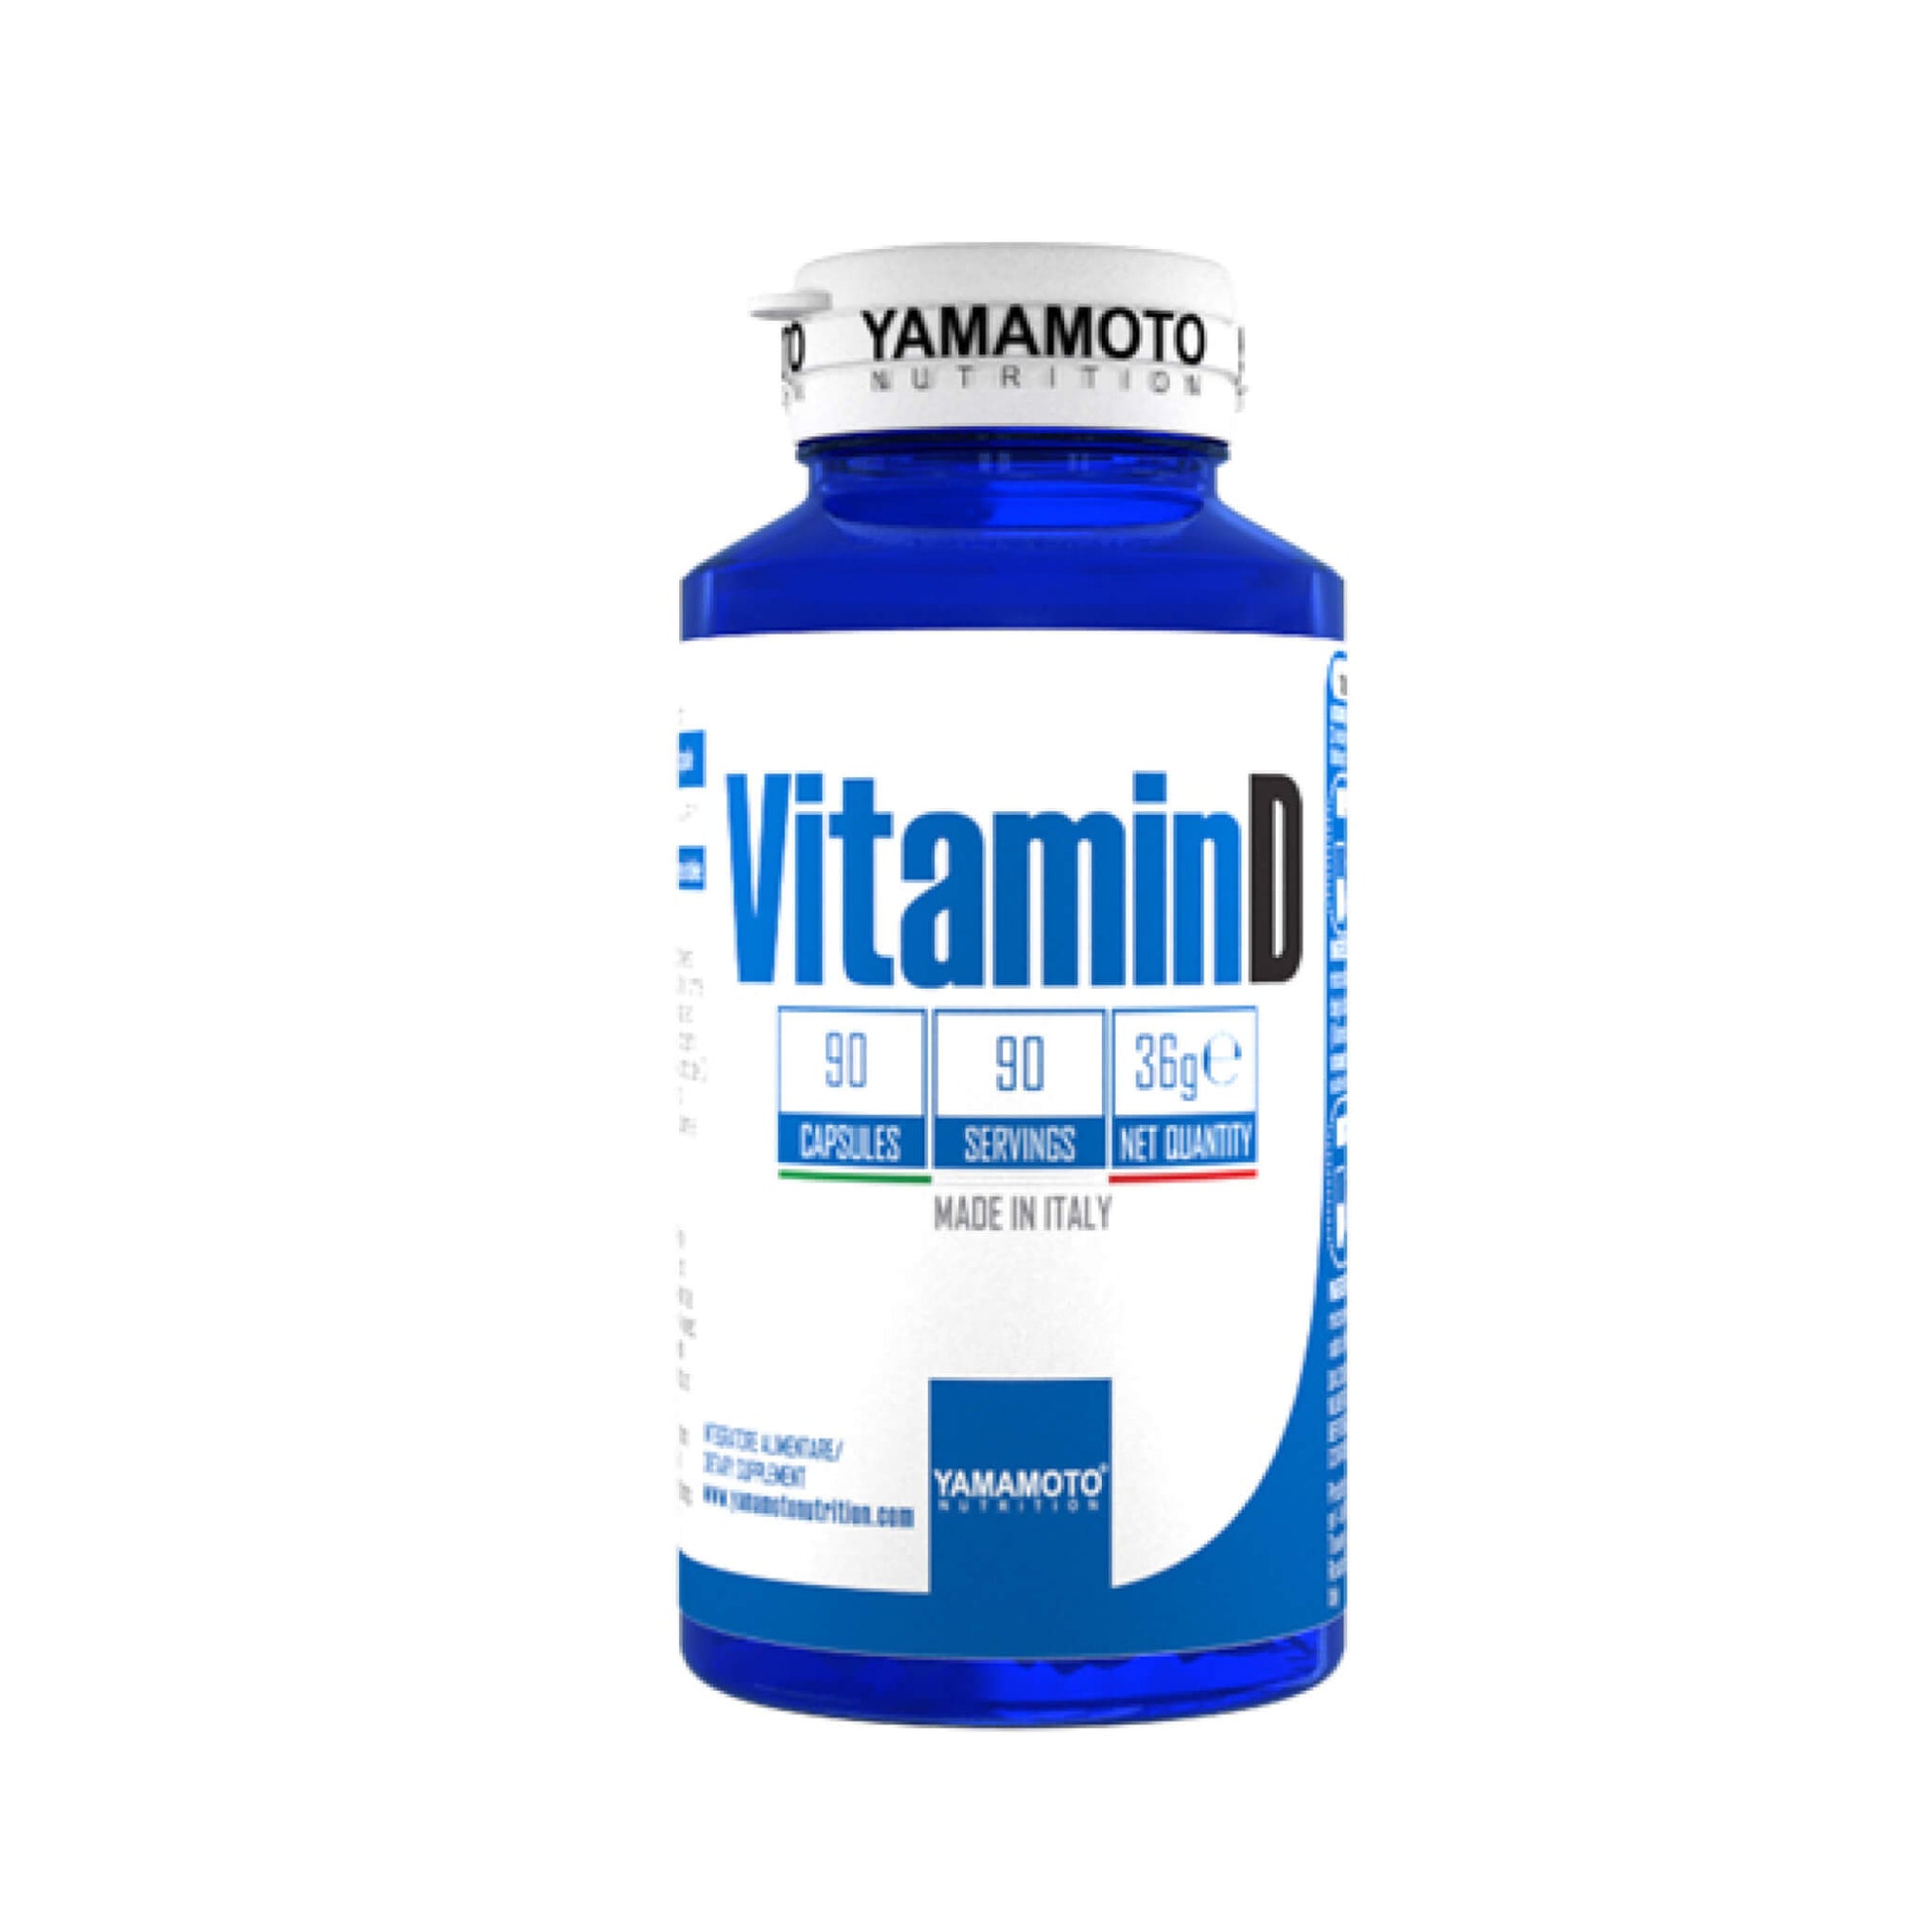 VitaminD